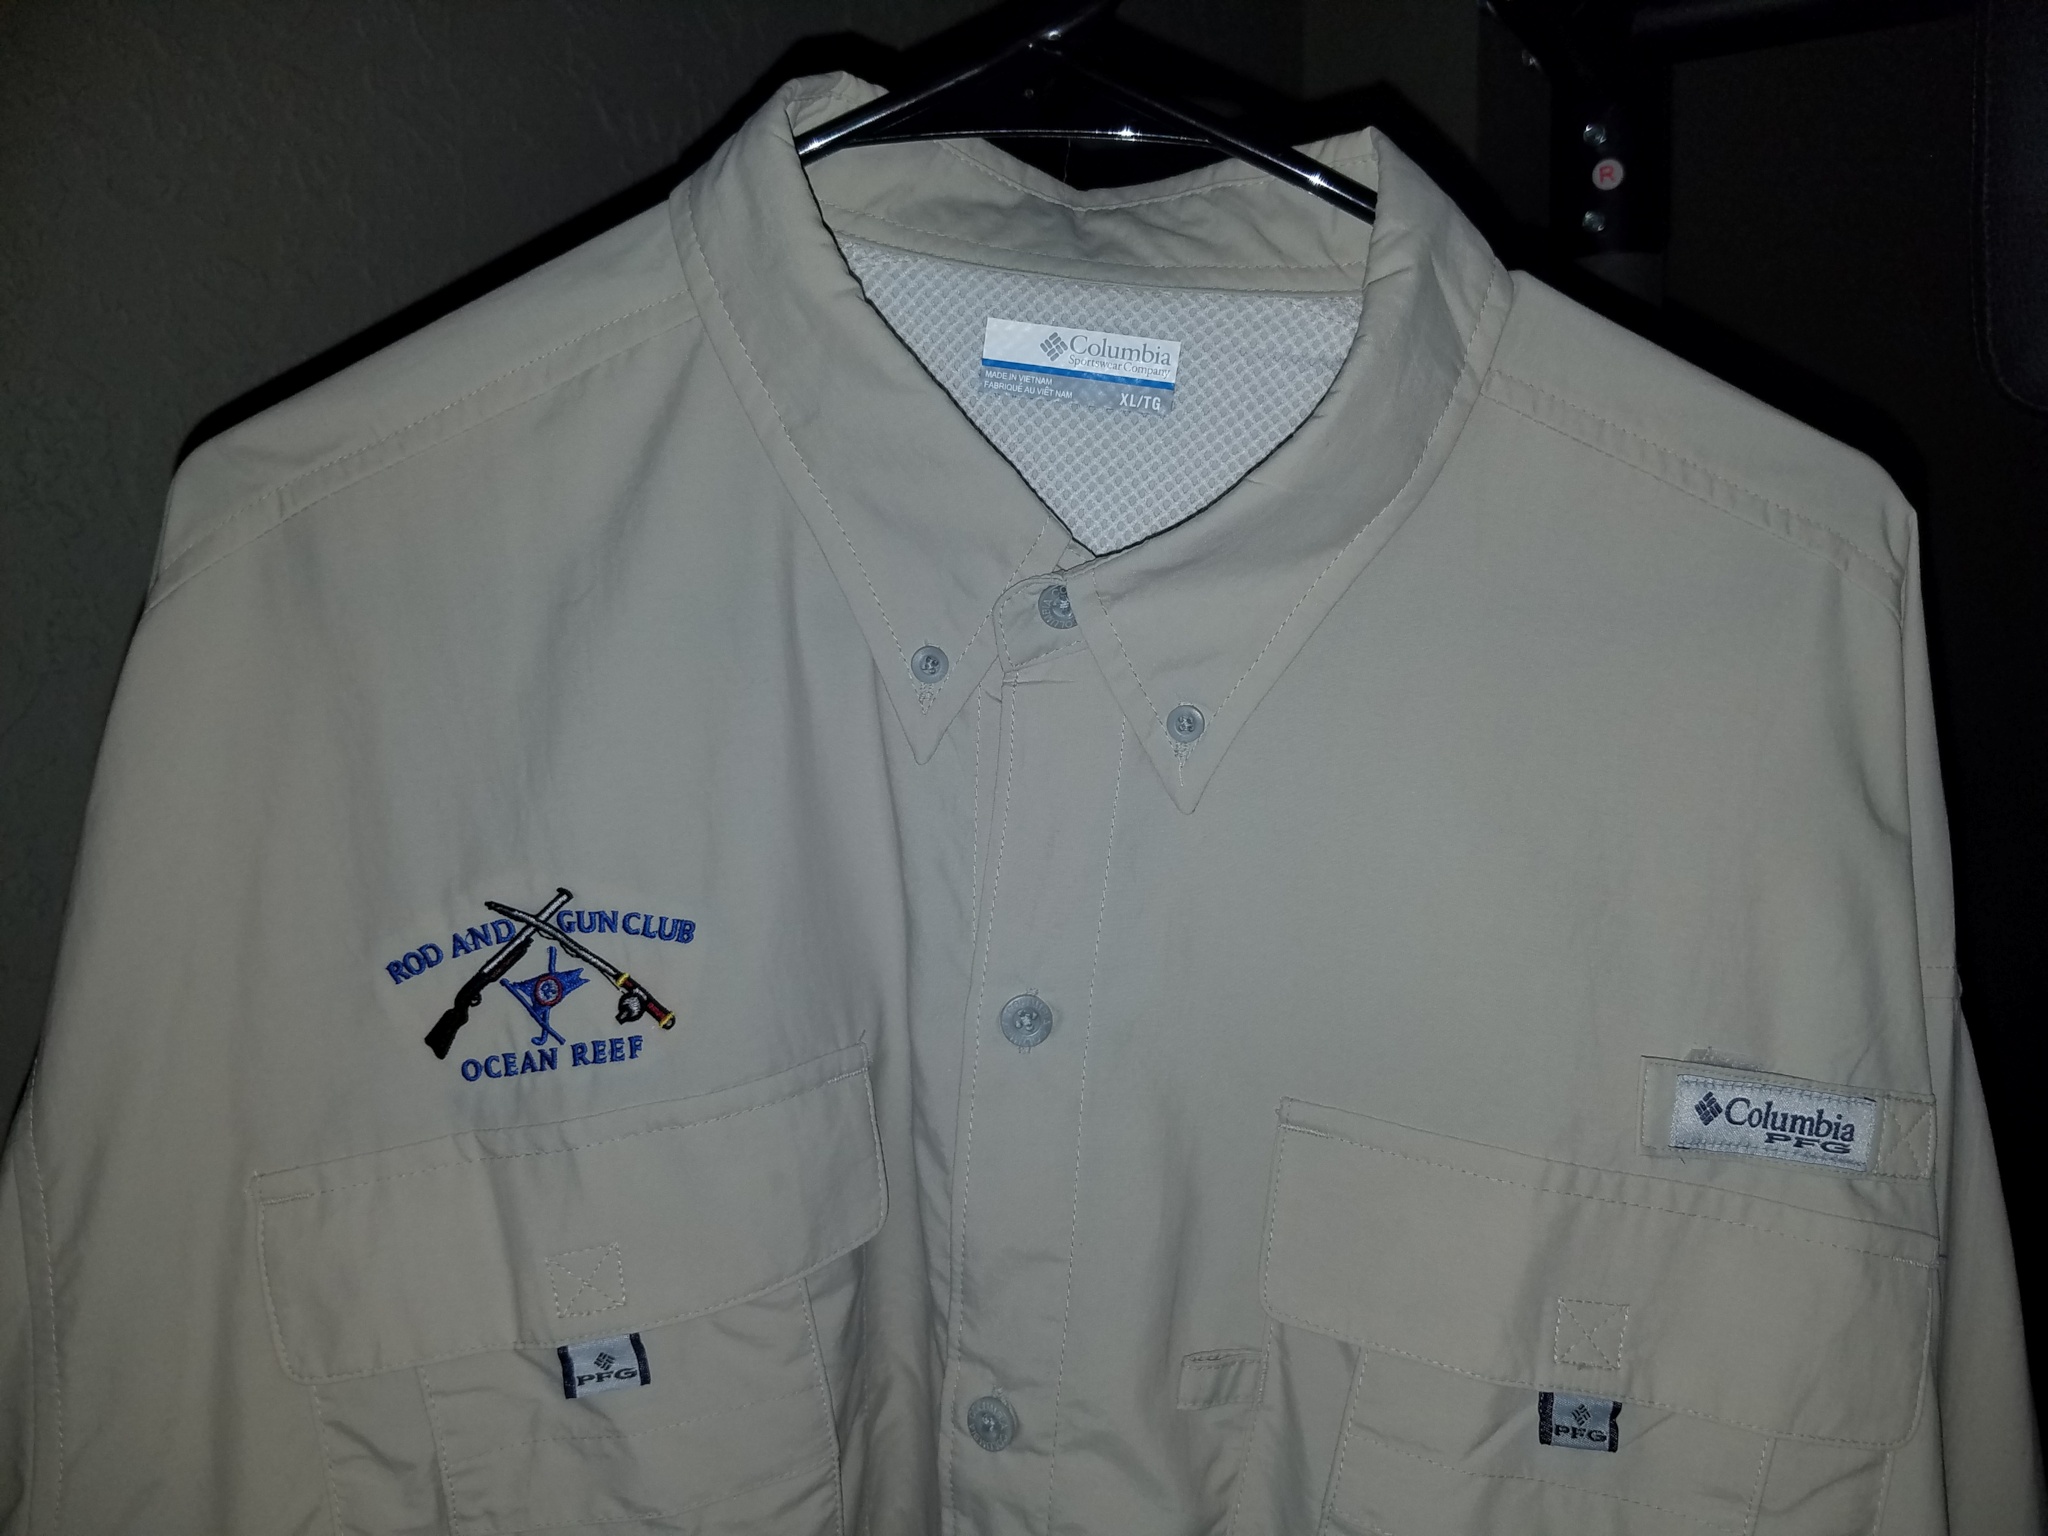 Rod and Gun Club - Columbia PFG long sleeve fishing shirts.